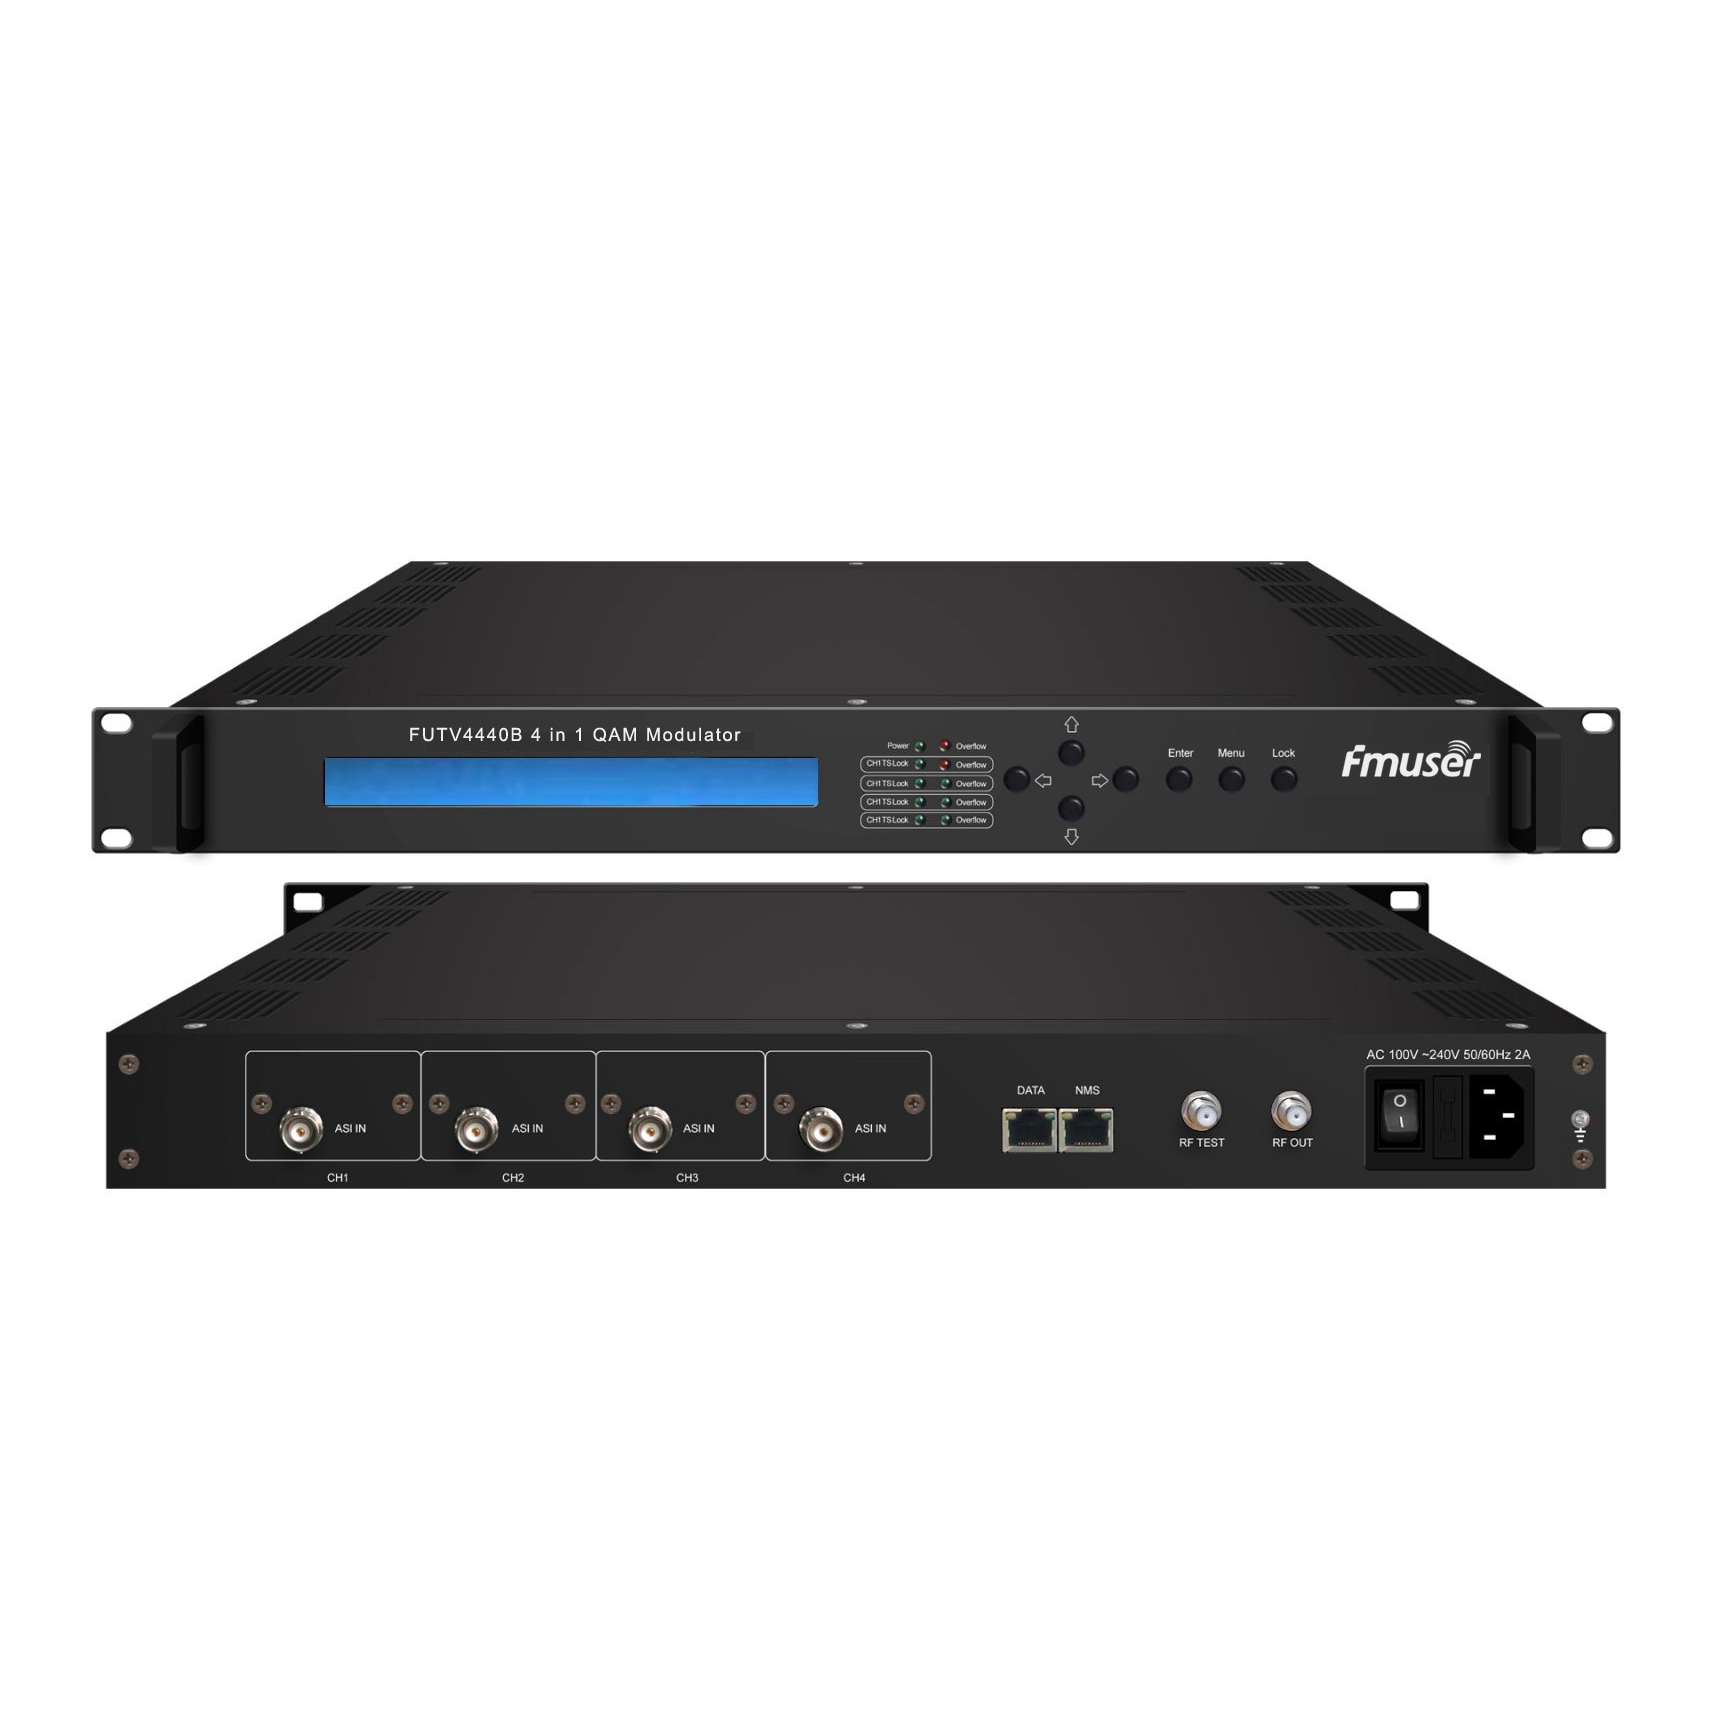 FMUSER FUTV4440B 4 в 1 QAM модулятор (опционально 4 * ASI / 4 * QAM / 4 * DVB-S тюнер / 4 * DVB-тюнер S2 вход, выход RF) с управлением сети